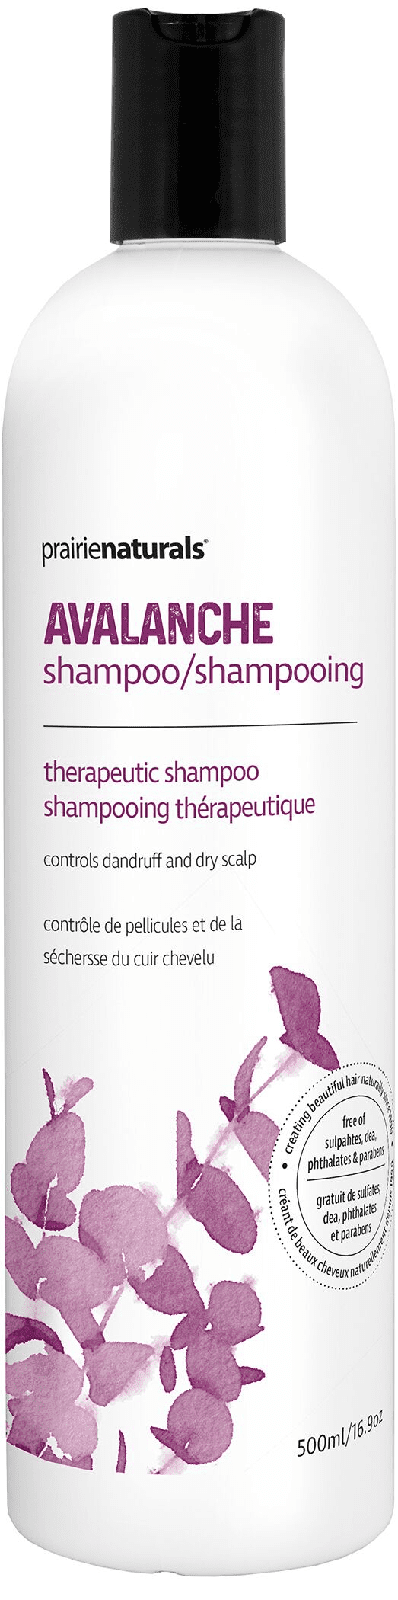 Prairie Naturals Avalanche Anti-dandruff Shampoo 500 mL Image 2